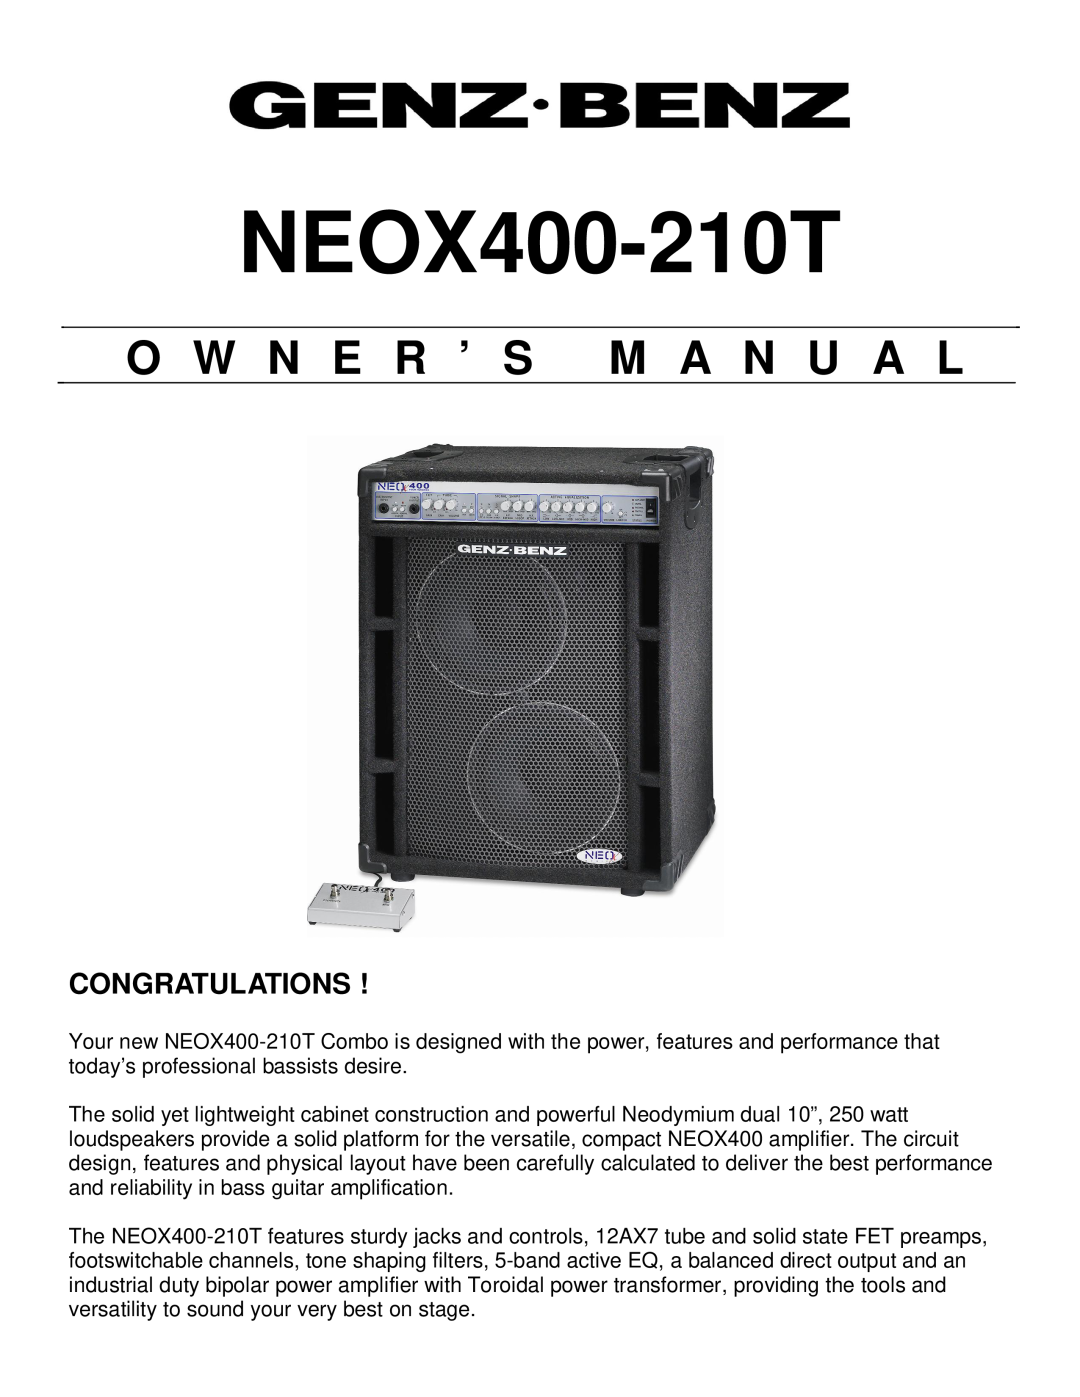 Genz-Benz NEOX400-210T owner manual O W N E R ’ S M A N U A L, Congratulations 